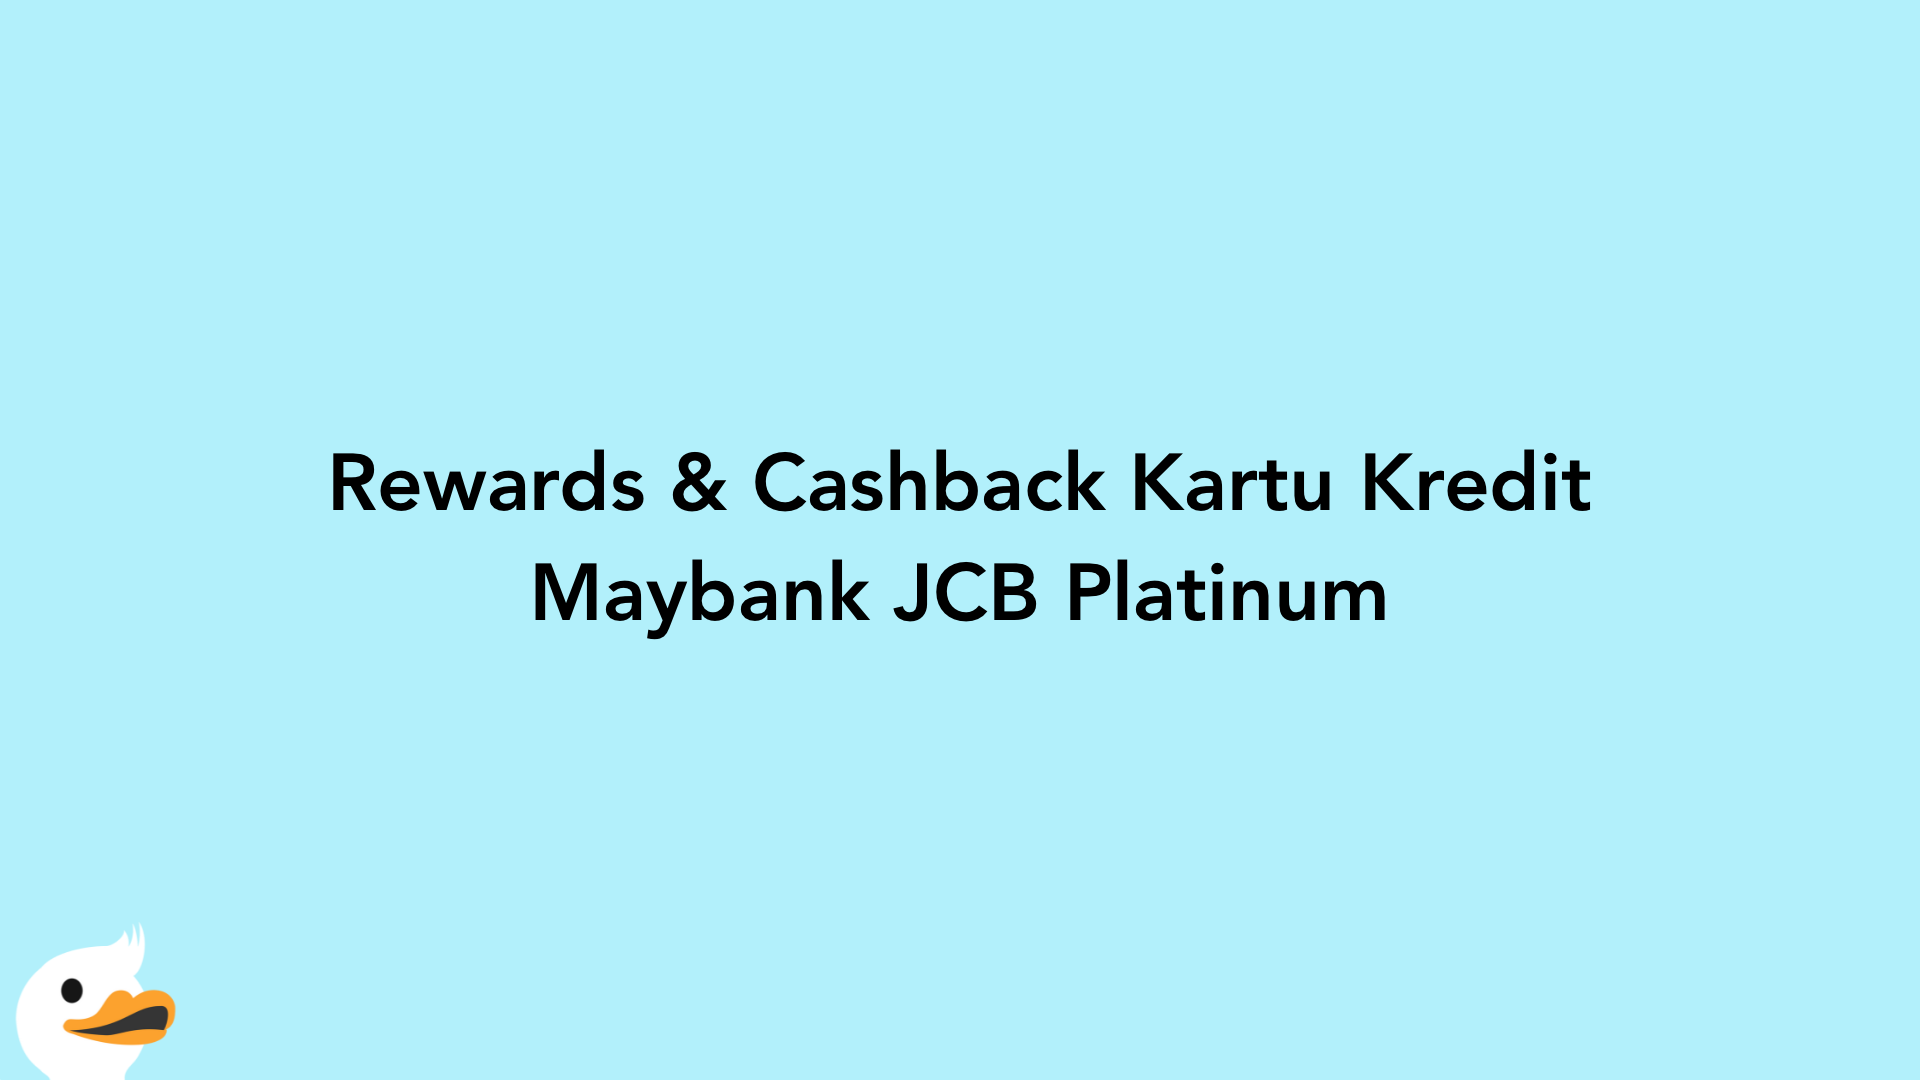 Rewards & Cashback Kartu Kredit Maybank JCB Platinum